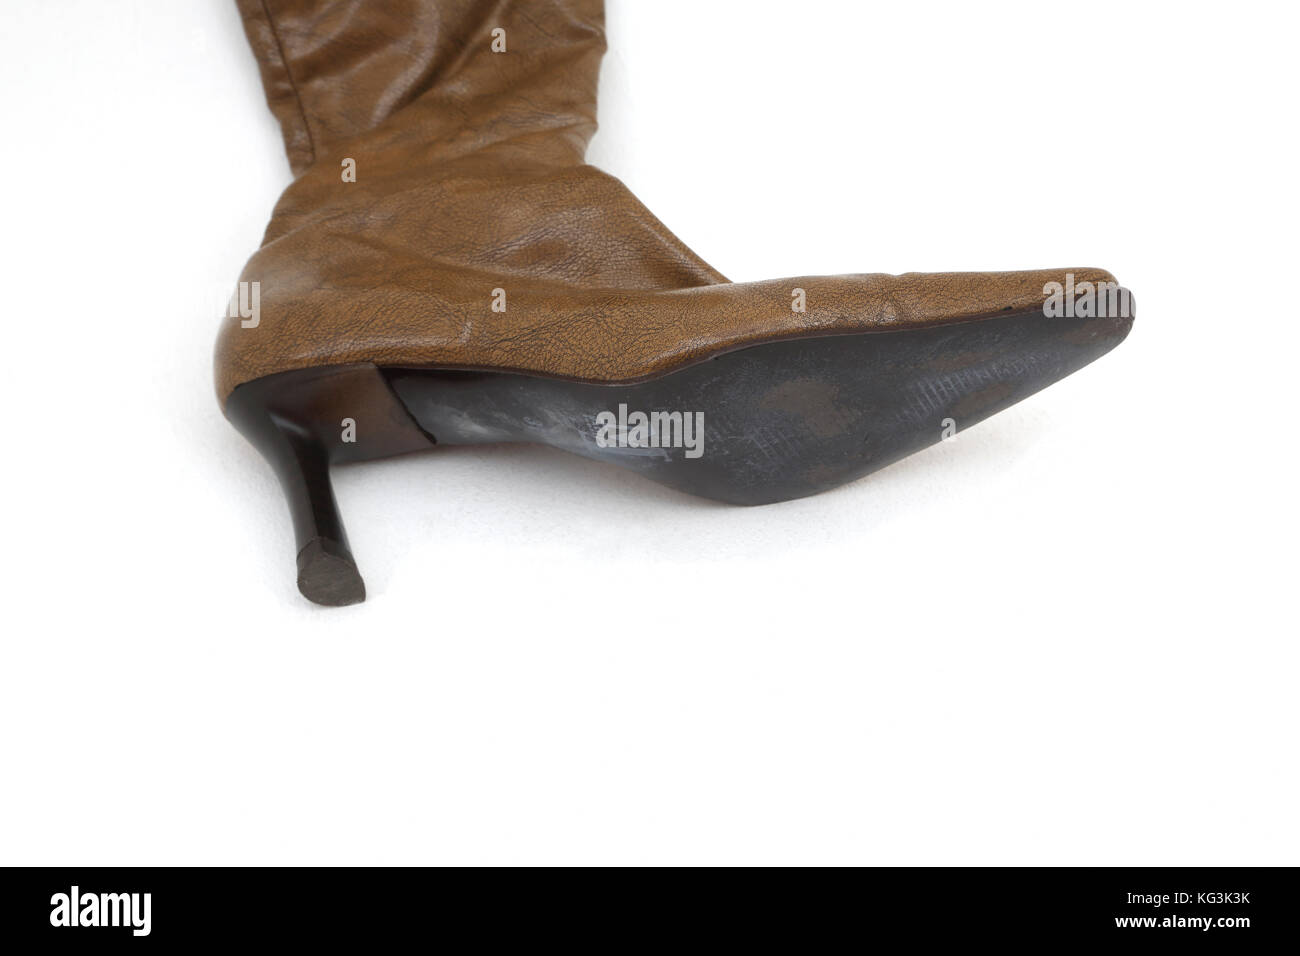 Rodilla botas altas de cuero marrón con tacones altos Foto de stock